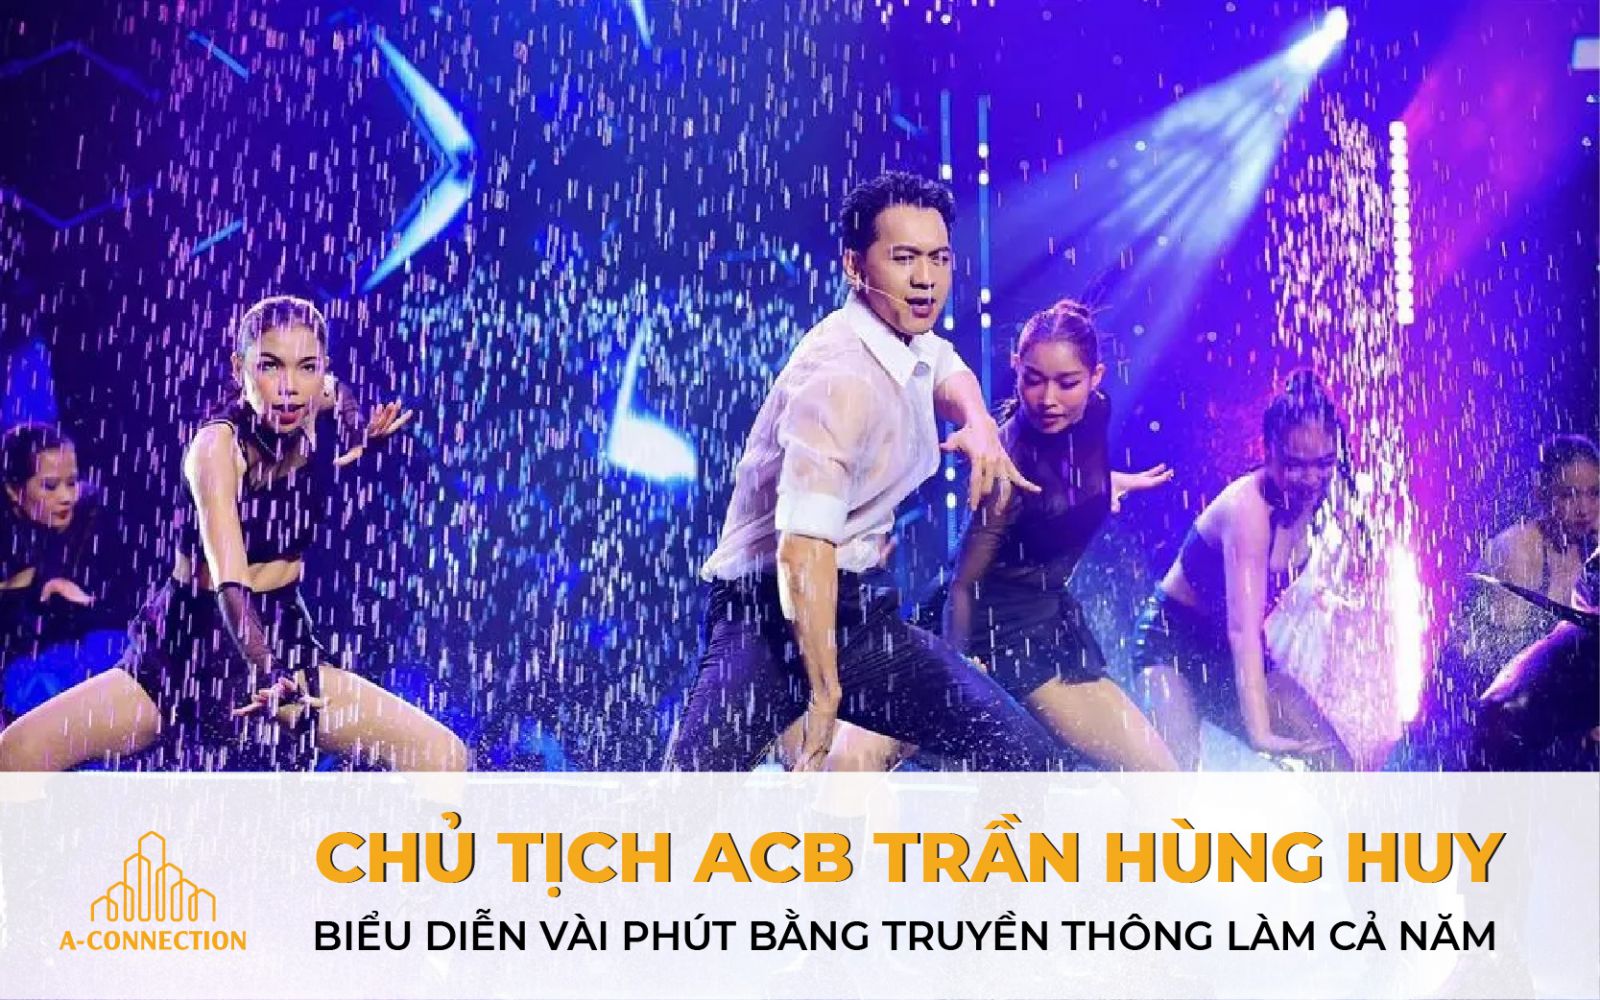 Chủ tịch ACB ông Trần Hùng Huy